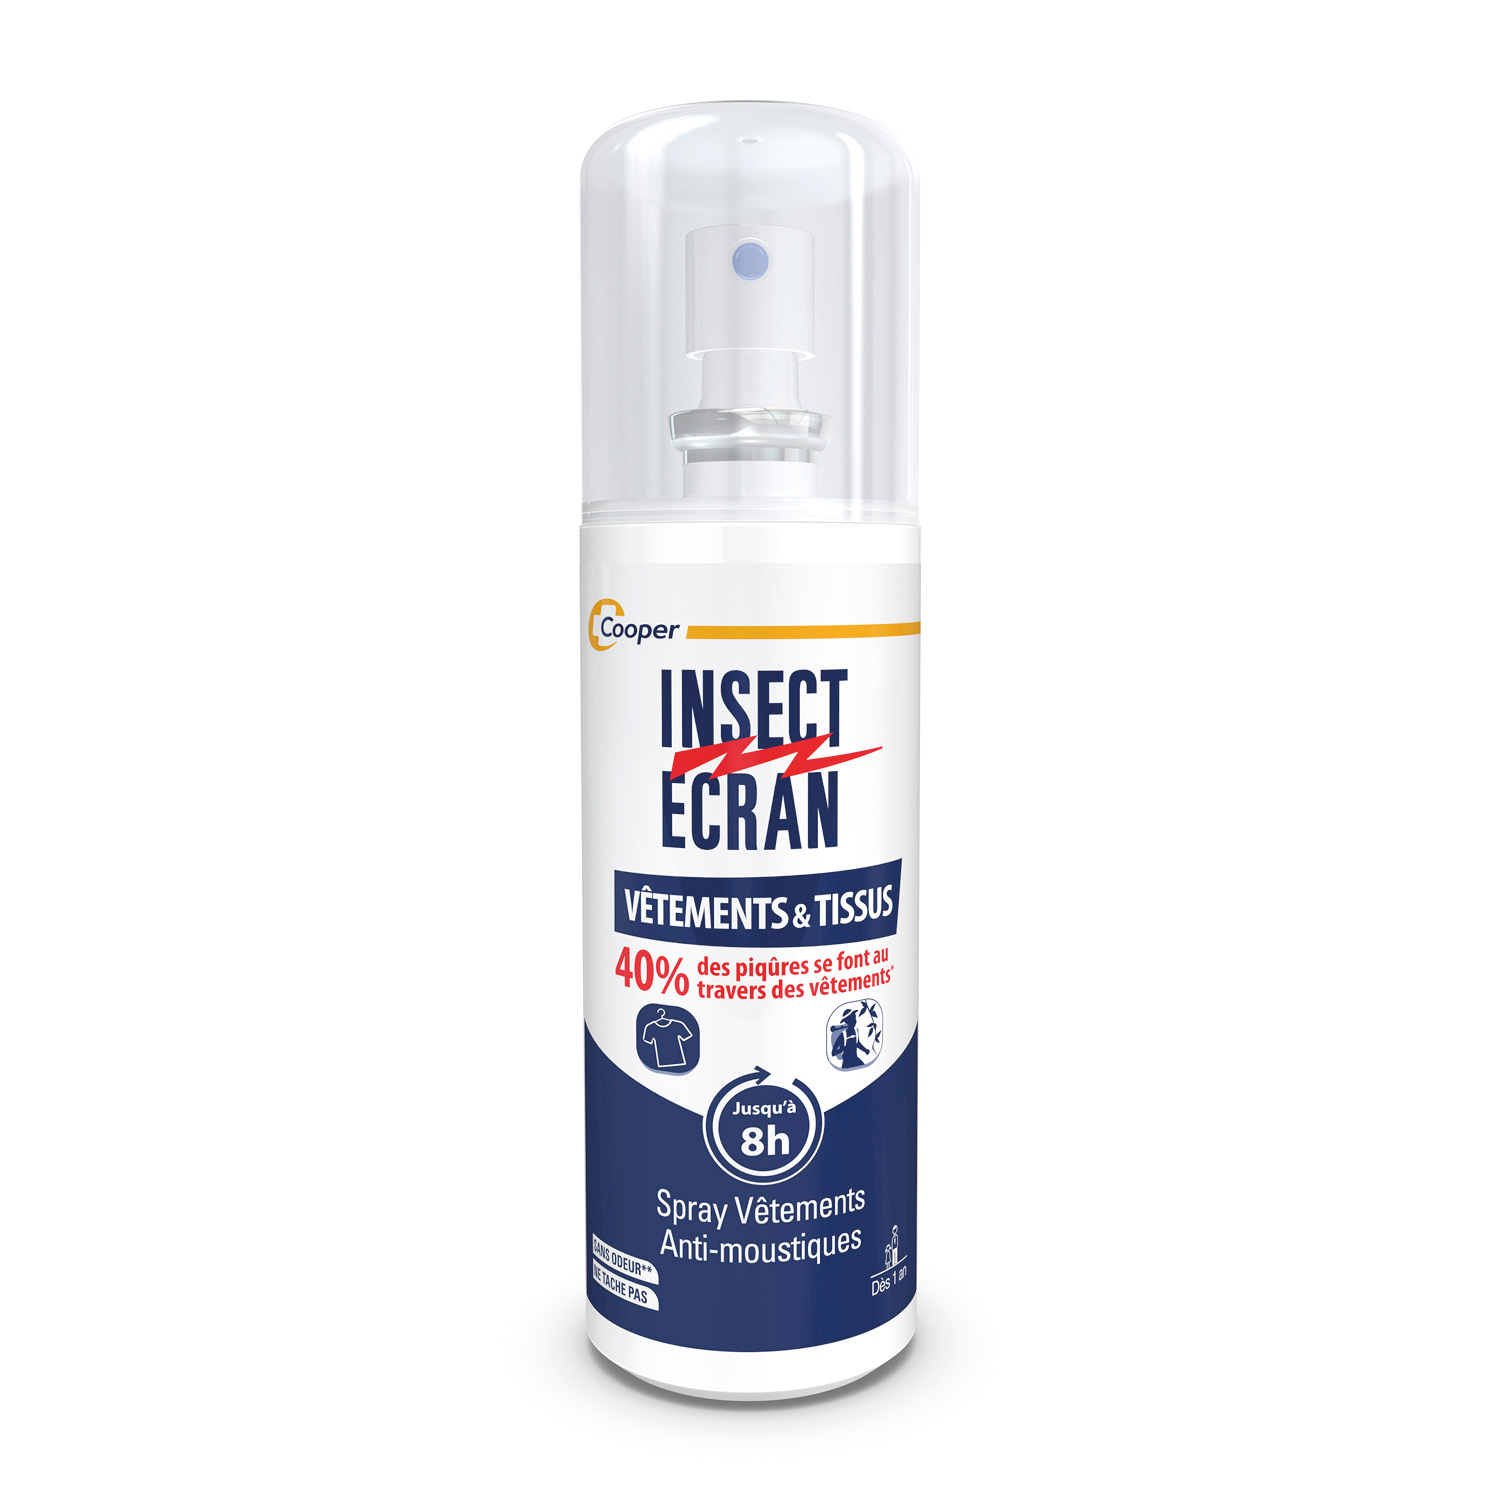 Spray vêtements & tissus - Insect Ecran anti-moustiques